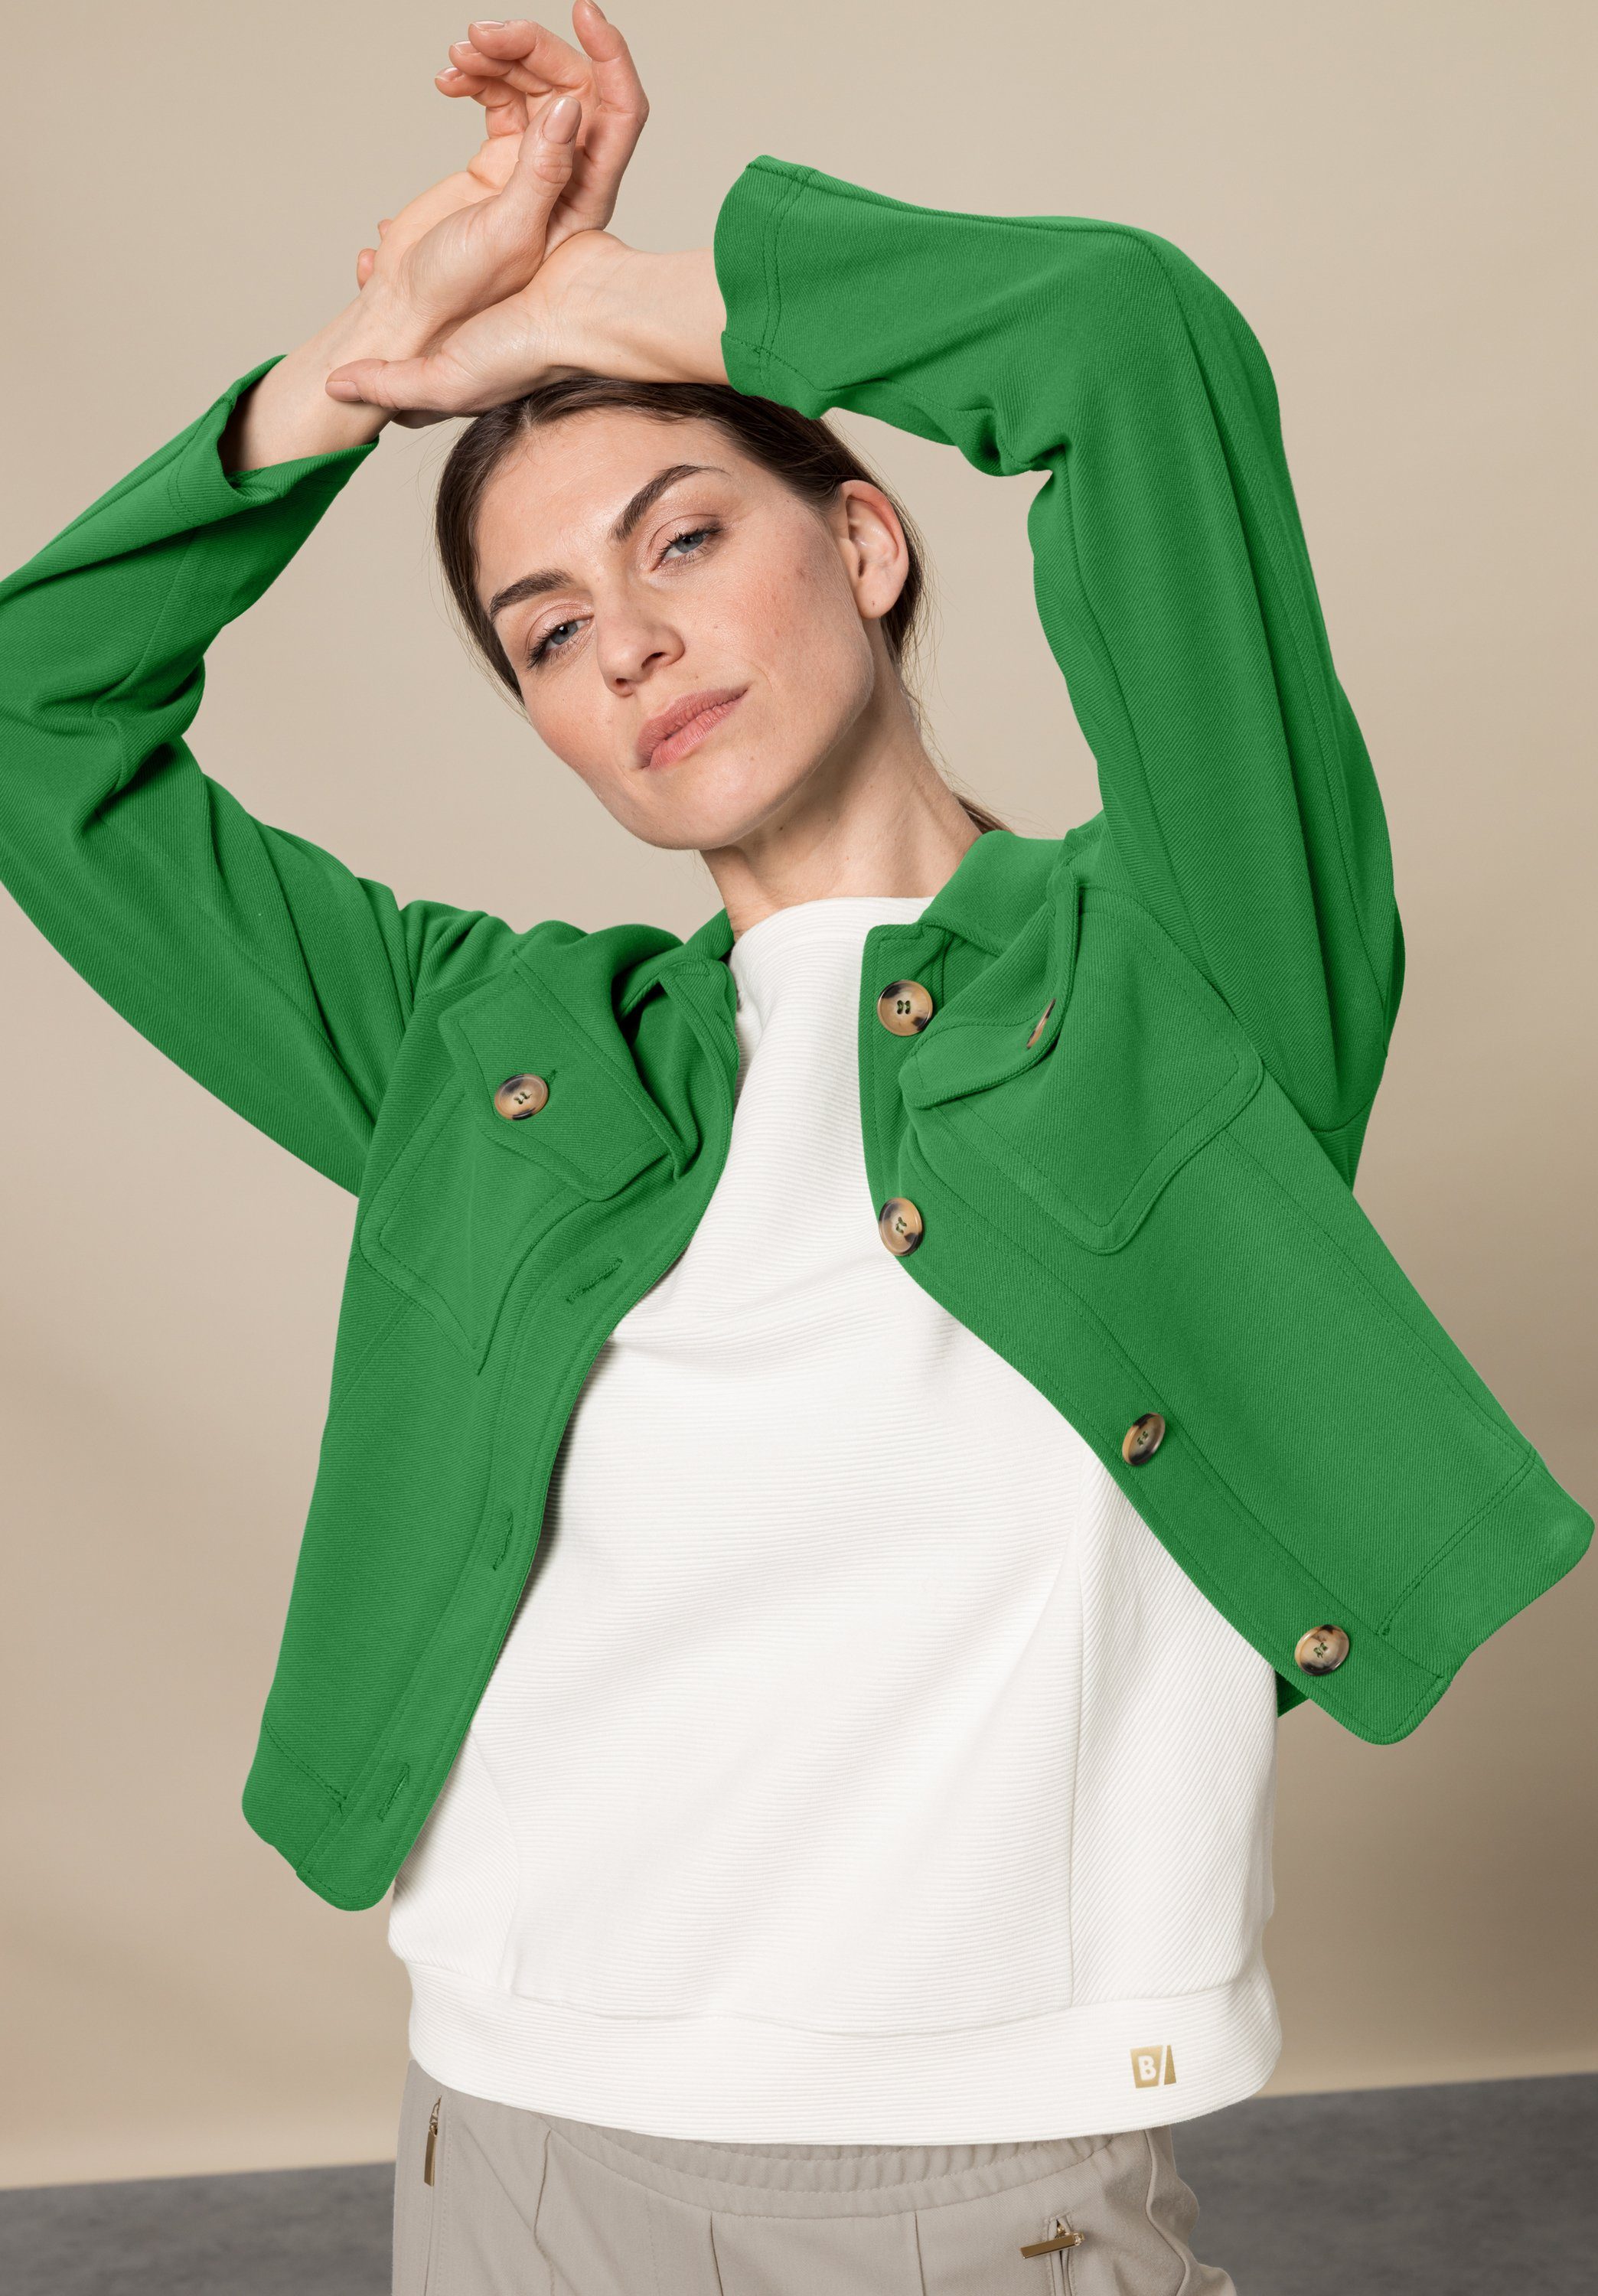 bianca Kurzjacke mit greenery dark MIRANDA angesagter Trendfarbe Details in stylischen